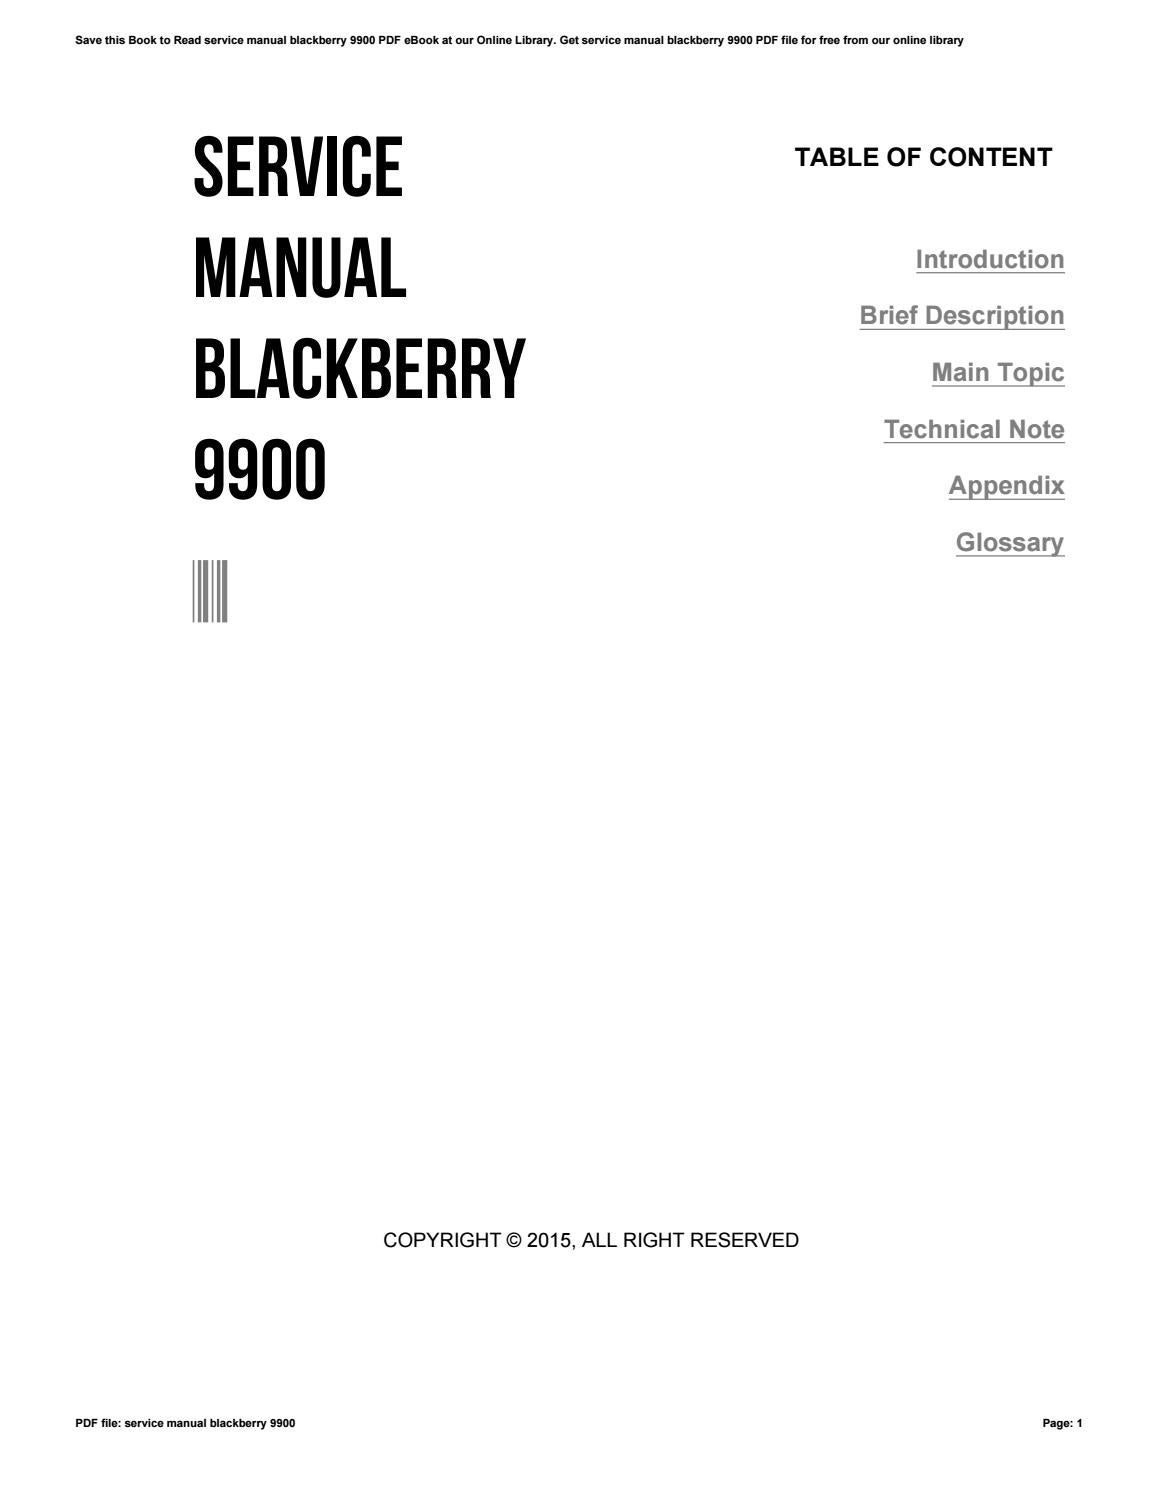 serviceboekinformatie niet gedacht Blackberry 9900